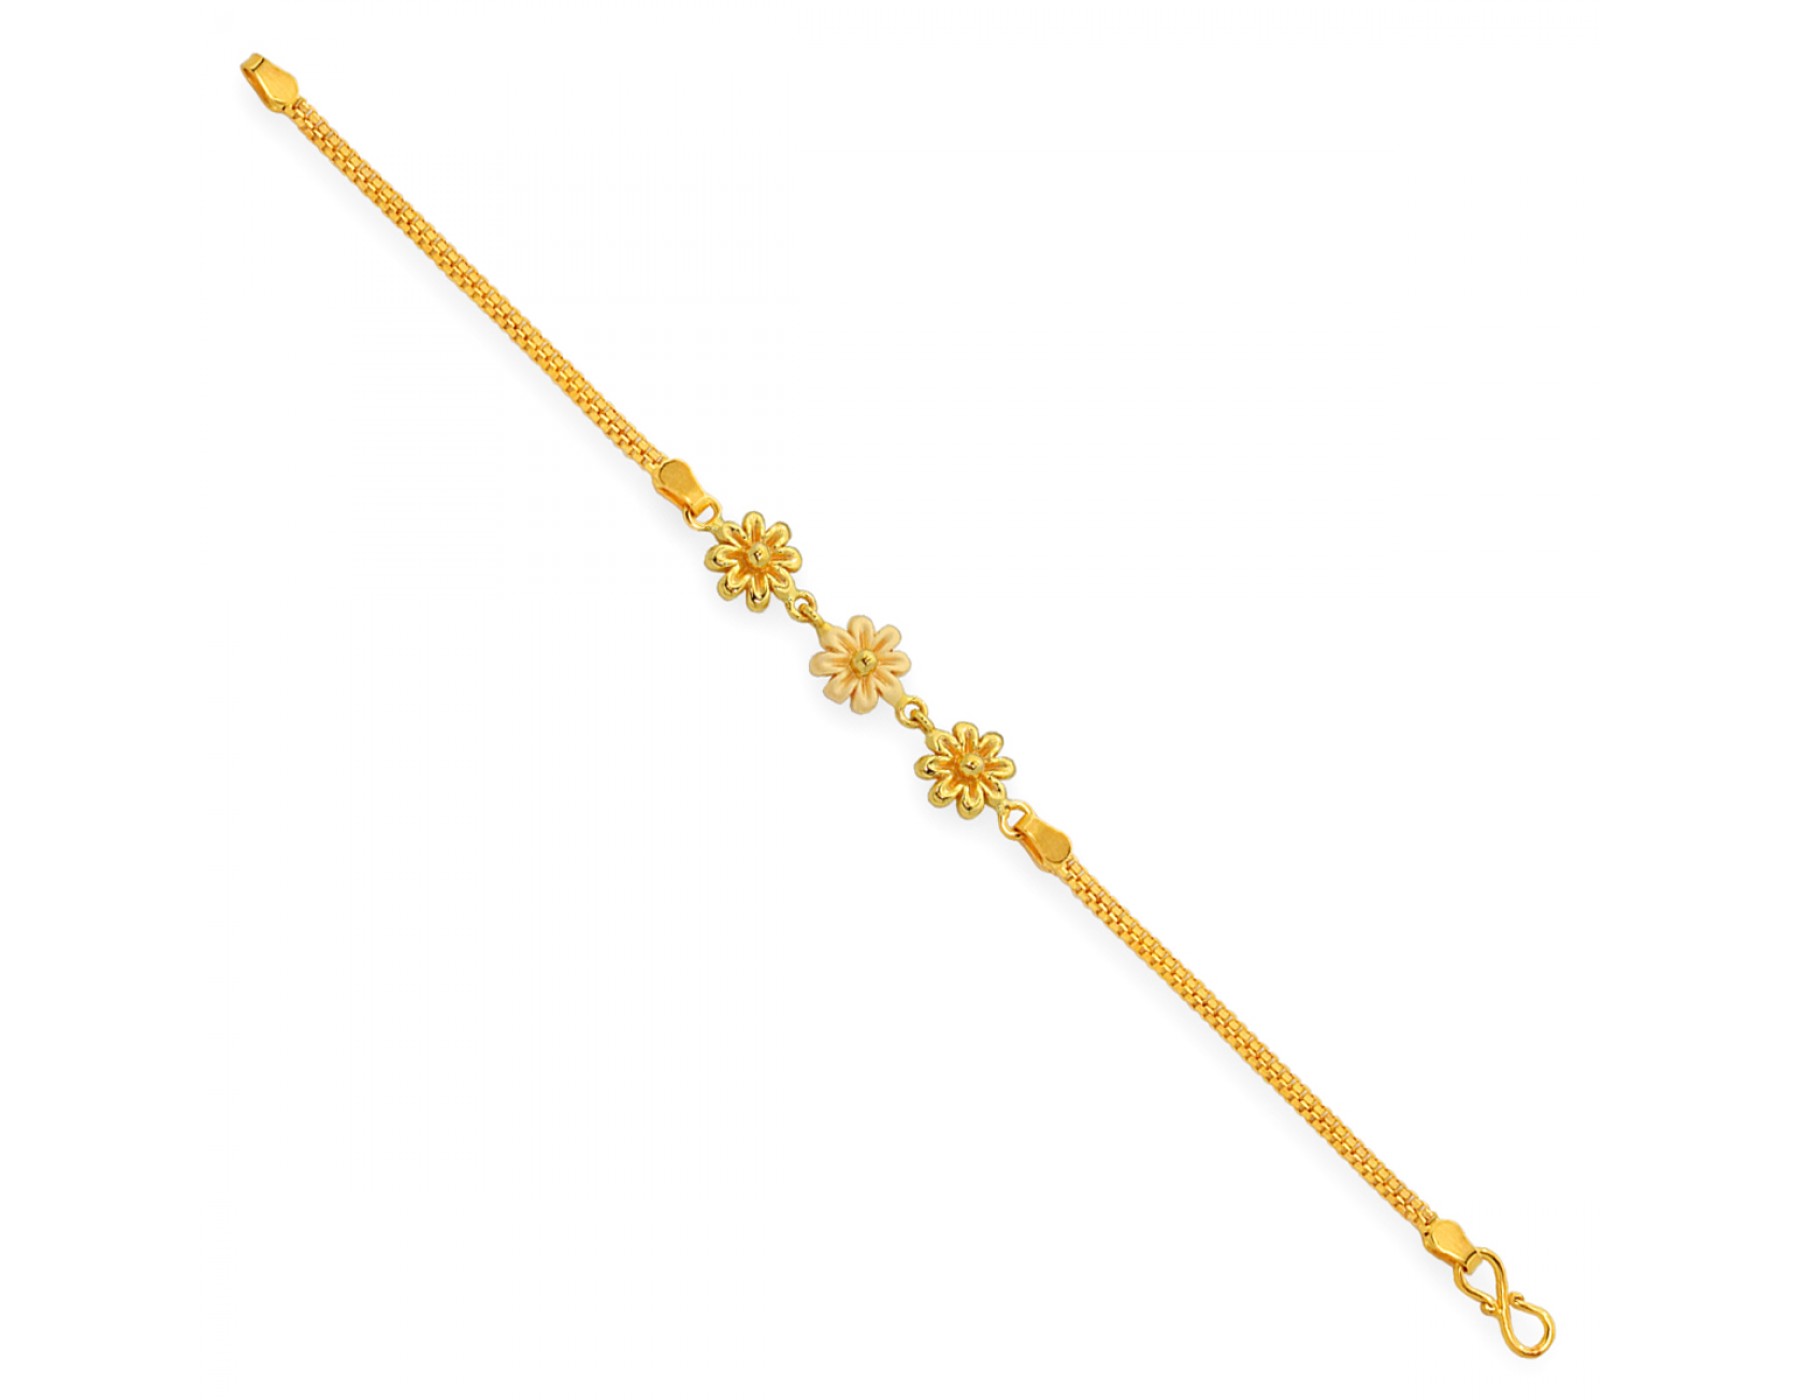 Fancy beads Bracelet in 22K Gold - BR-627